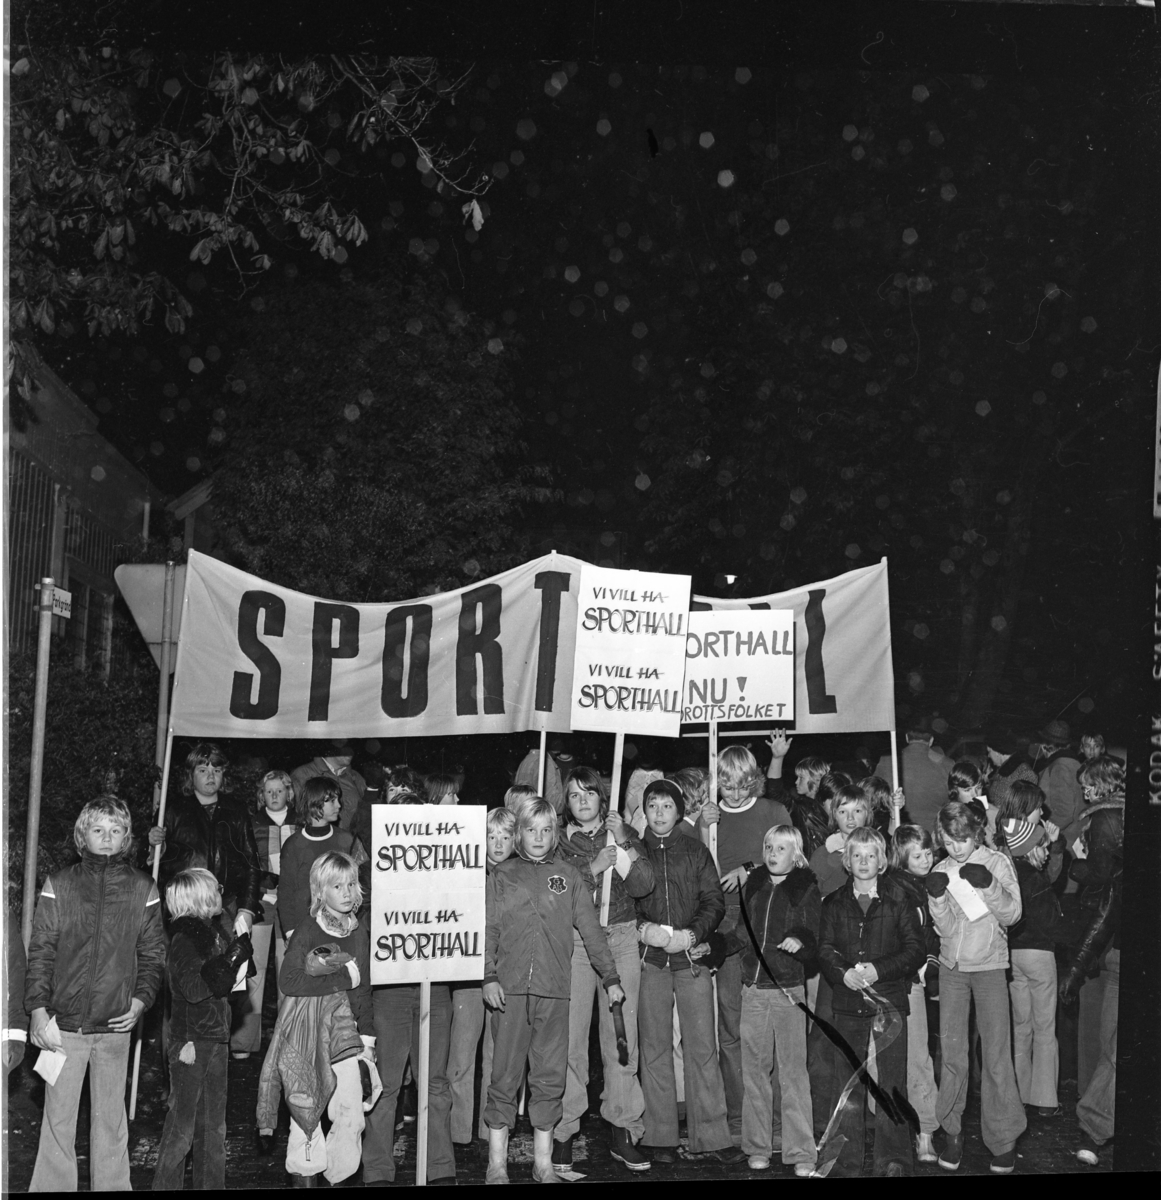 Ungdomar med banderoll och plakat om "Sporthall". Grännabor demonstrerar för att få en sporthall till Gränna. Det är oktober och mörkt.